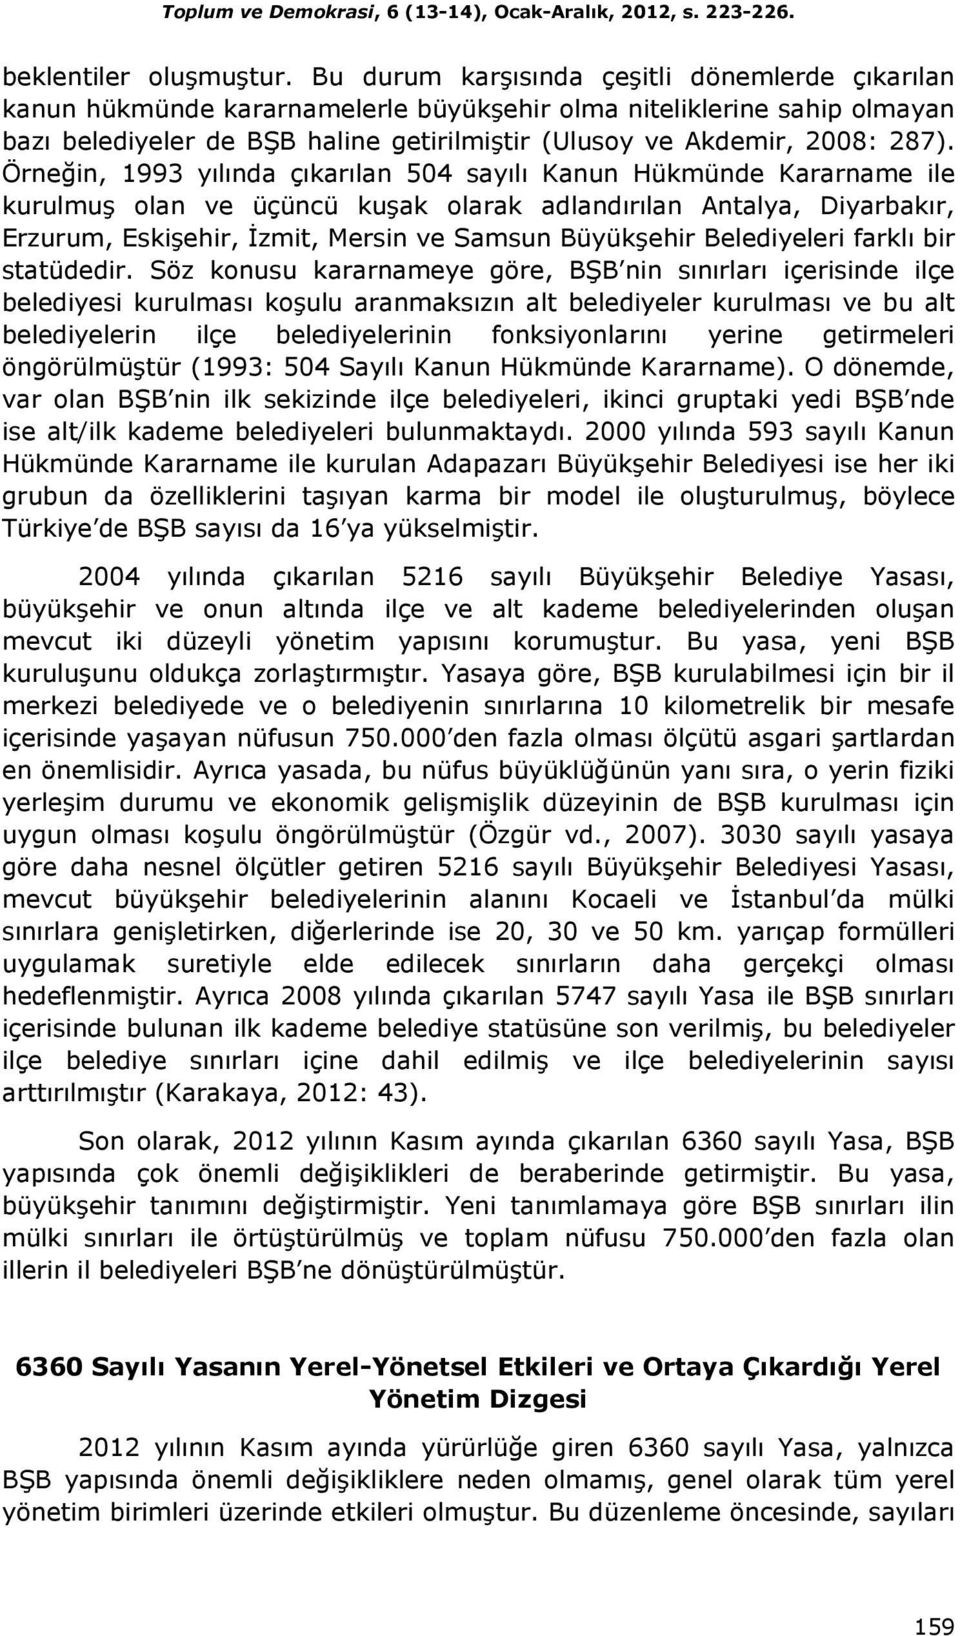 Örneğin, 1993 yılında çıkarılan 504 sayılı Kanun Hükmünde Kararname ile kurulmuş olan ve üçüncü kuşak olarak adlandırılan Antalya, Diyarbakır, Erzurum, Eskişehir, Đzmit, Mersin ve Samsun Büyükşehir